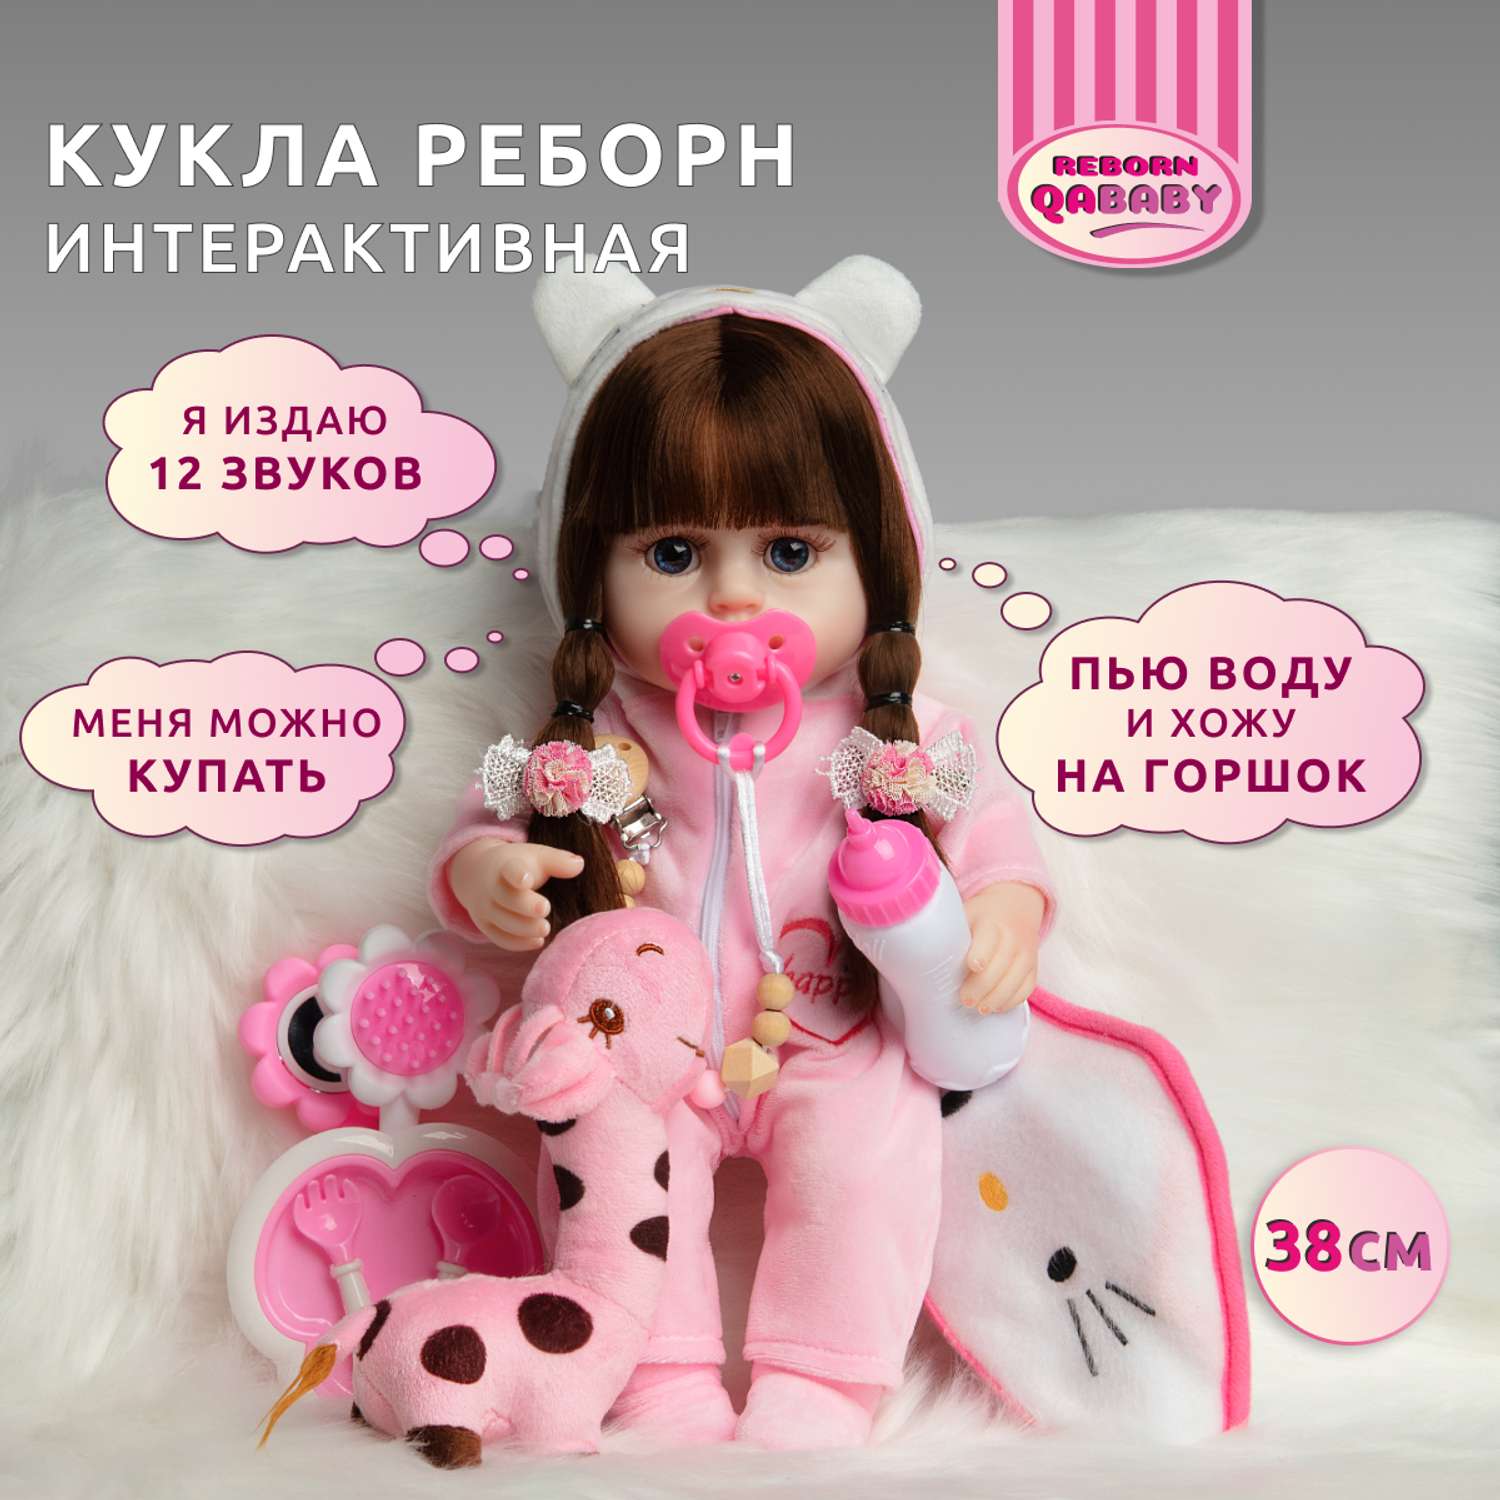 Кукла Реборн QA BABY Альбина девочка интерактивная Пупс набор игрушки для ванной для девочки 38 см 3805 - фото 1